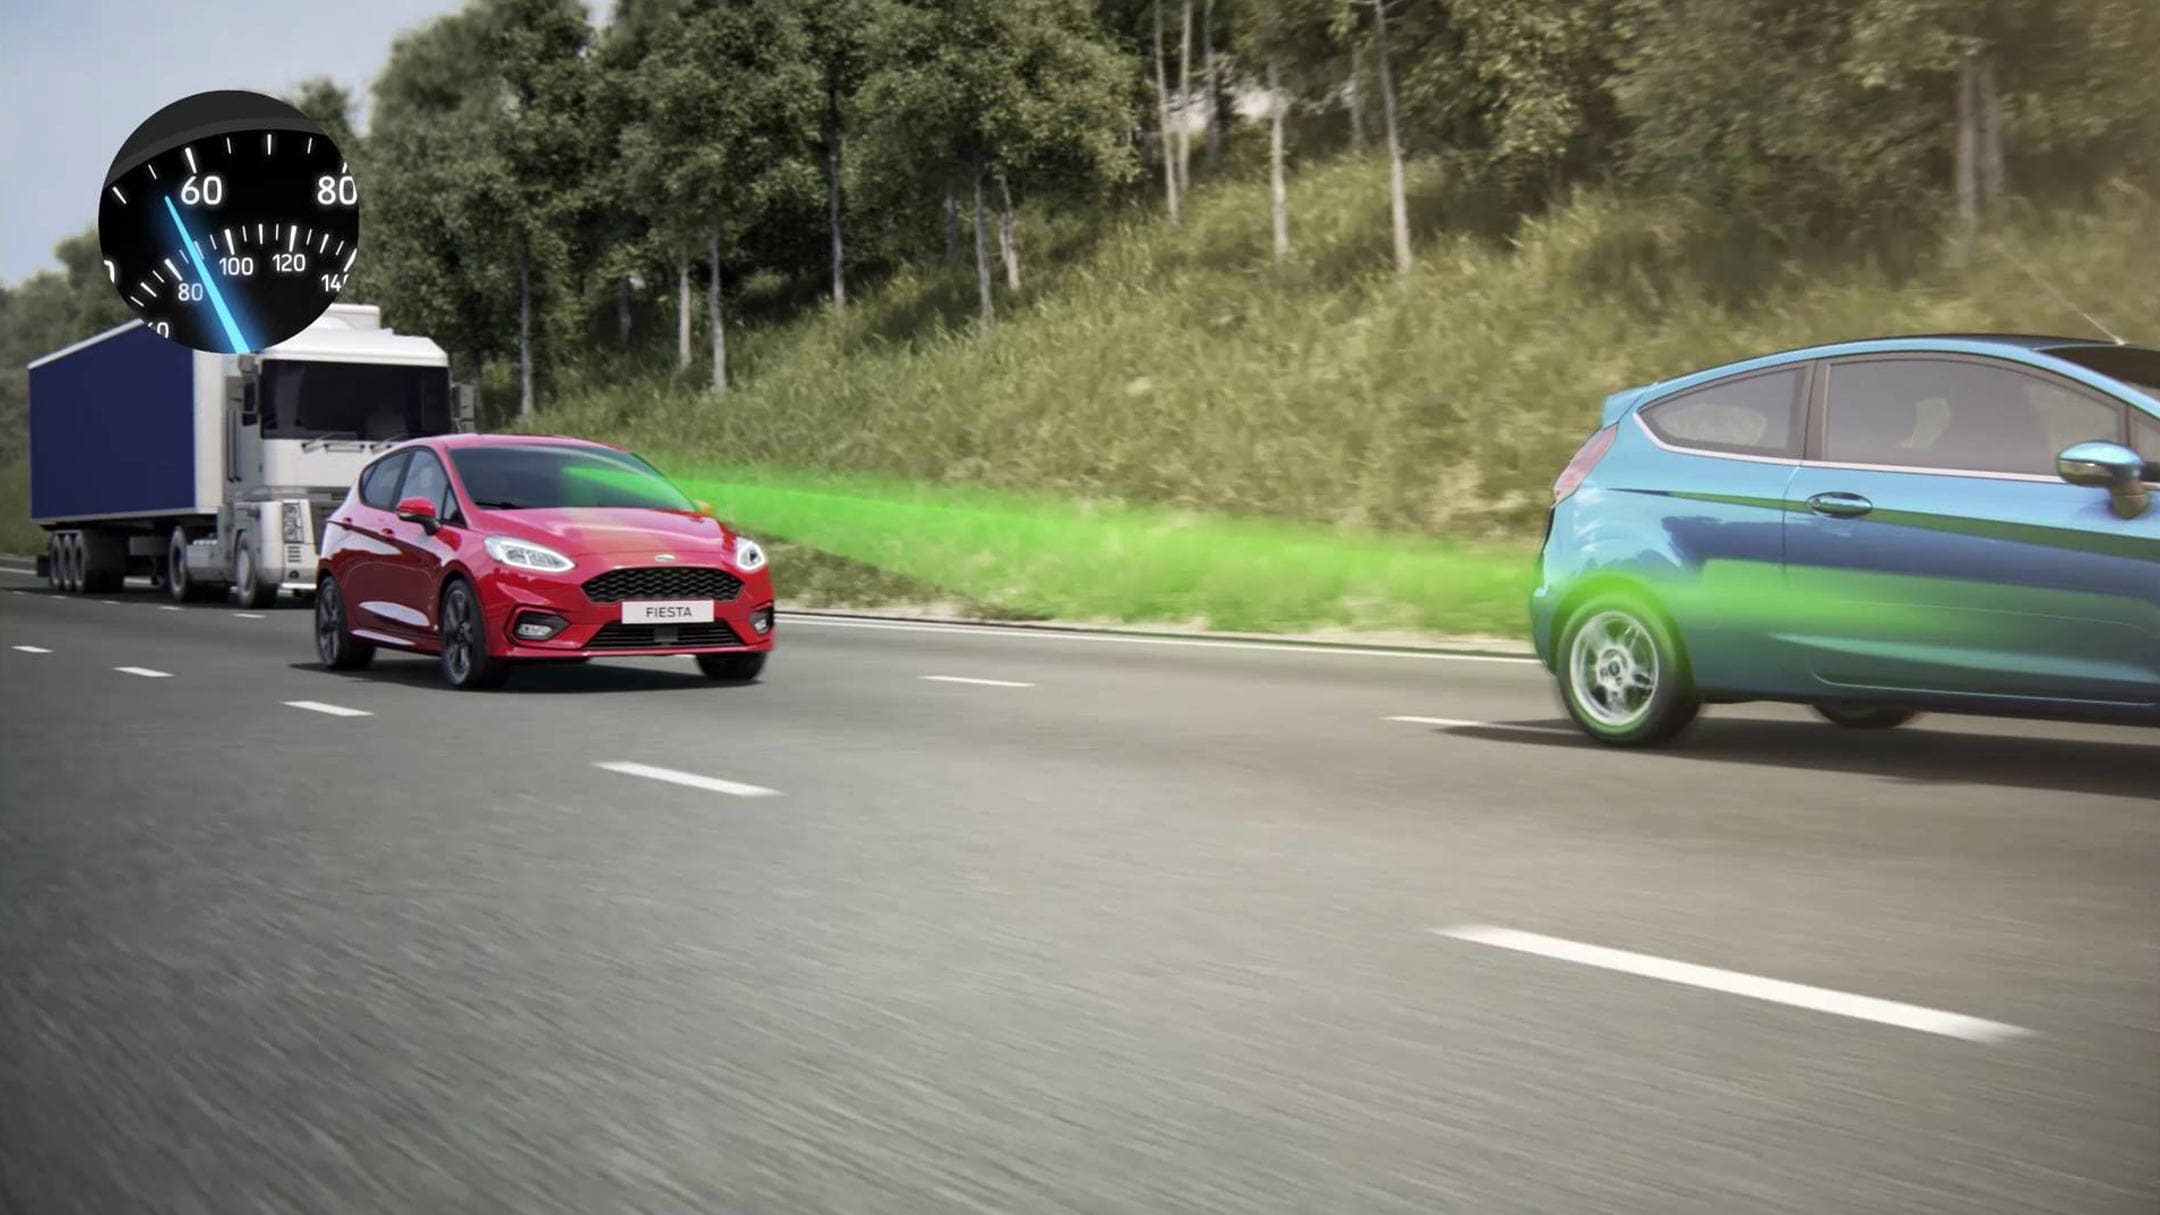 Una Ford Fiesta ST rossa e una verde su una strada extraurbana. Visualizzazione del regolatore di velocità adattivo.Una Ford Fiesta ST rossa e una verde su una strada extraurbana. Visualizzazione del regolatore di velocità adattivo.